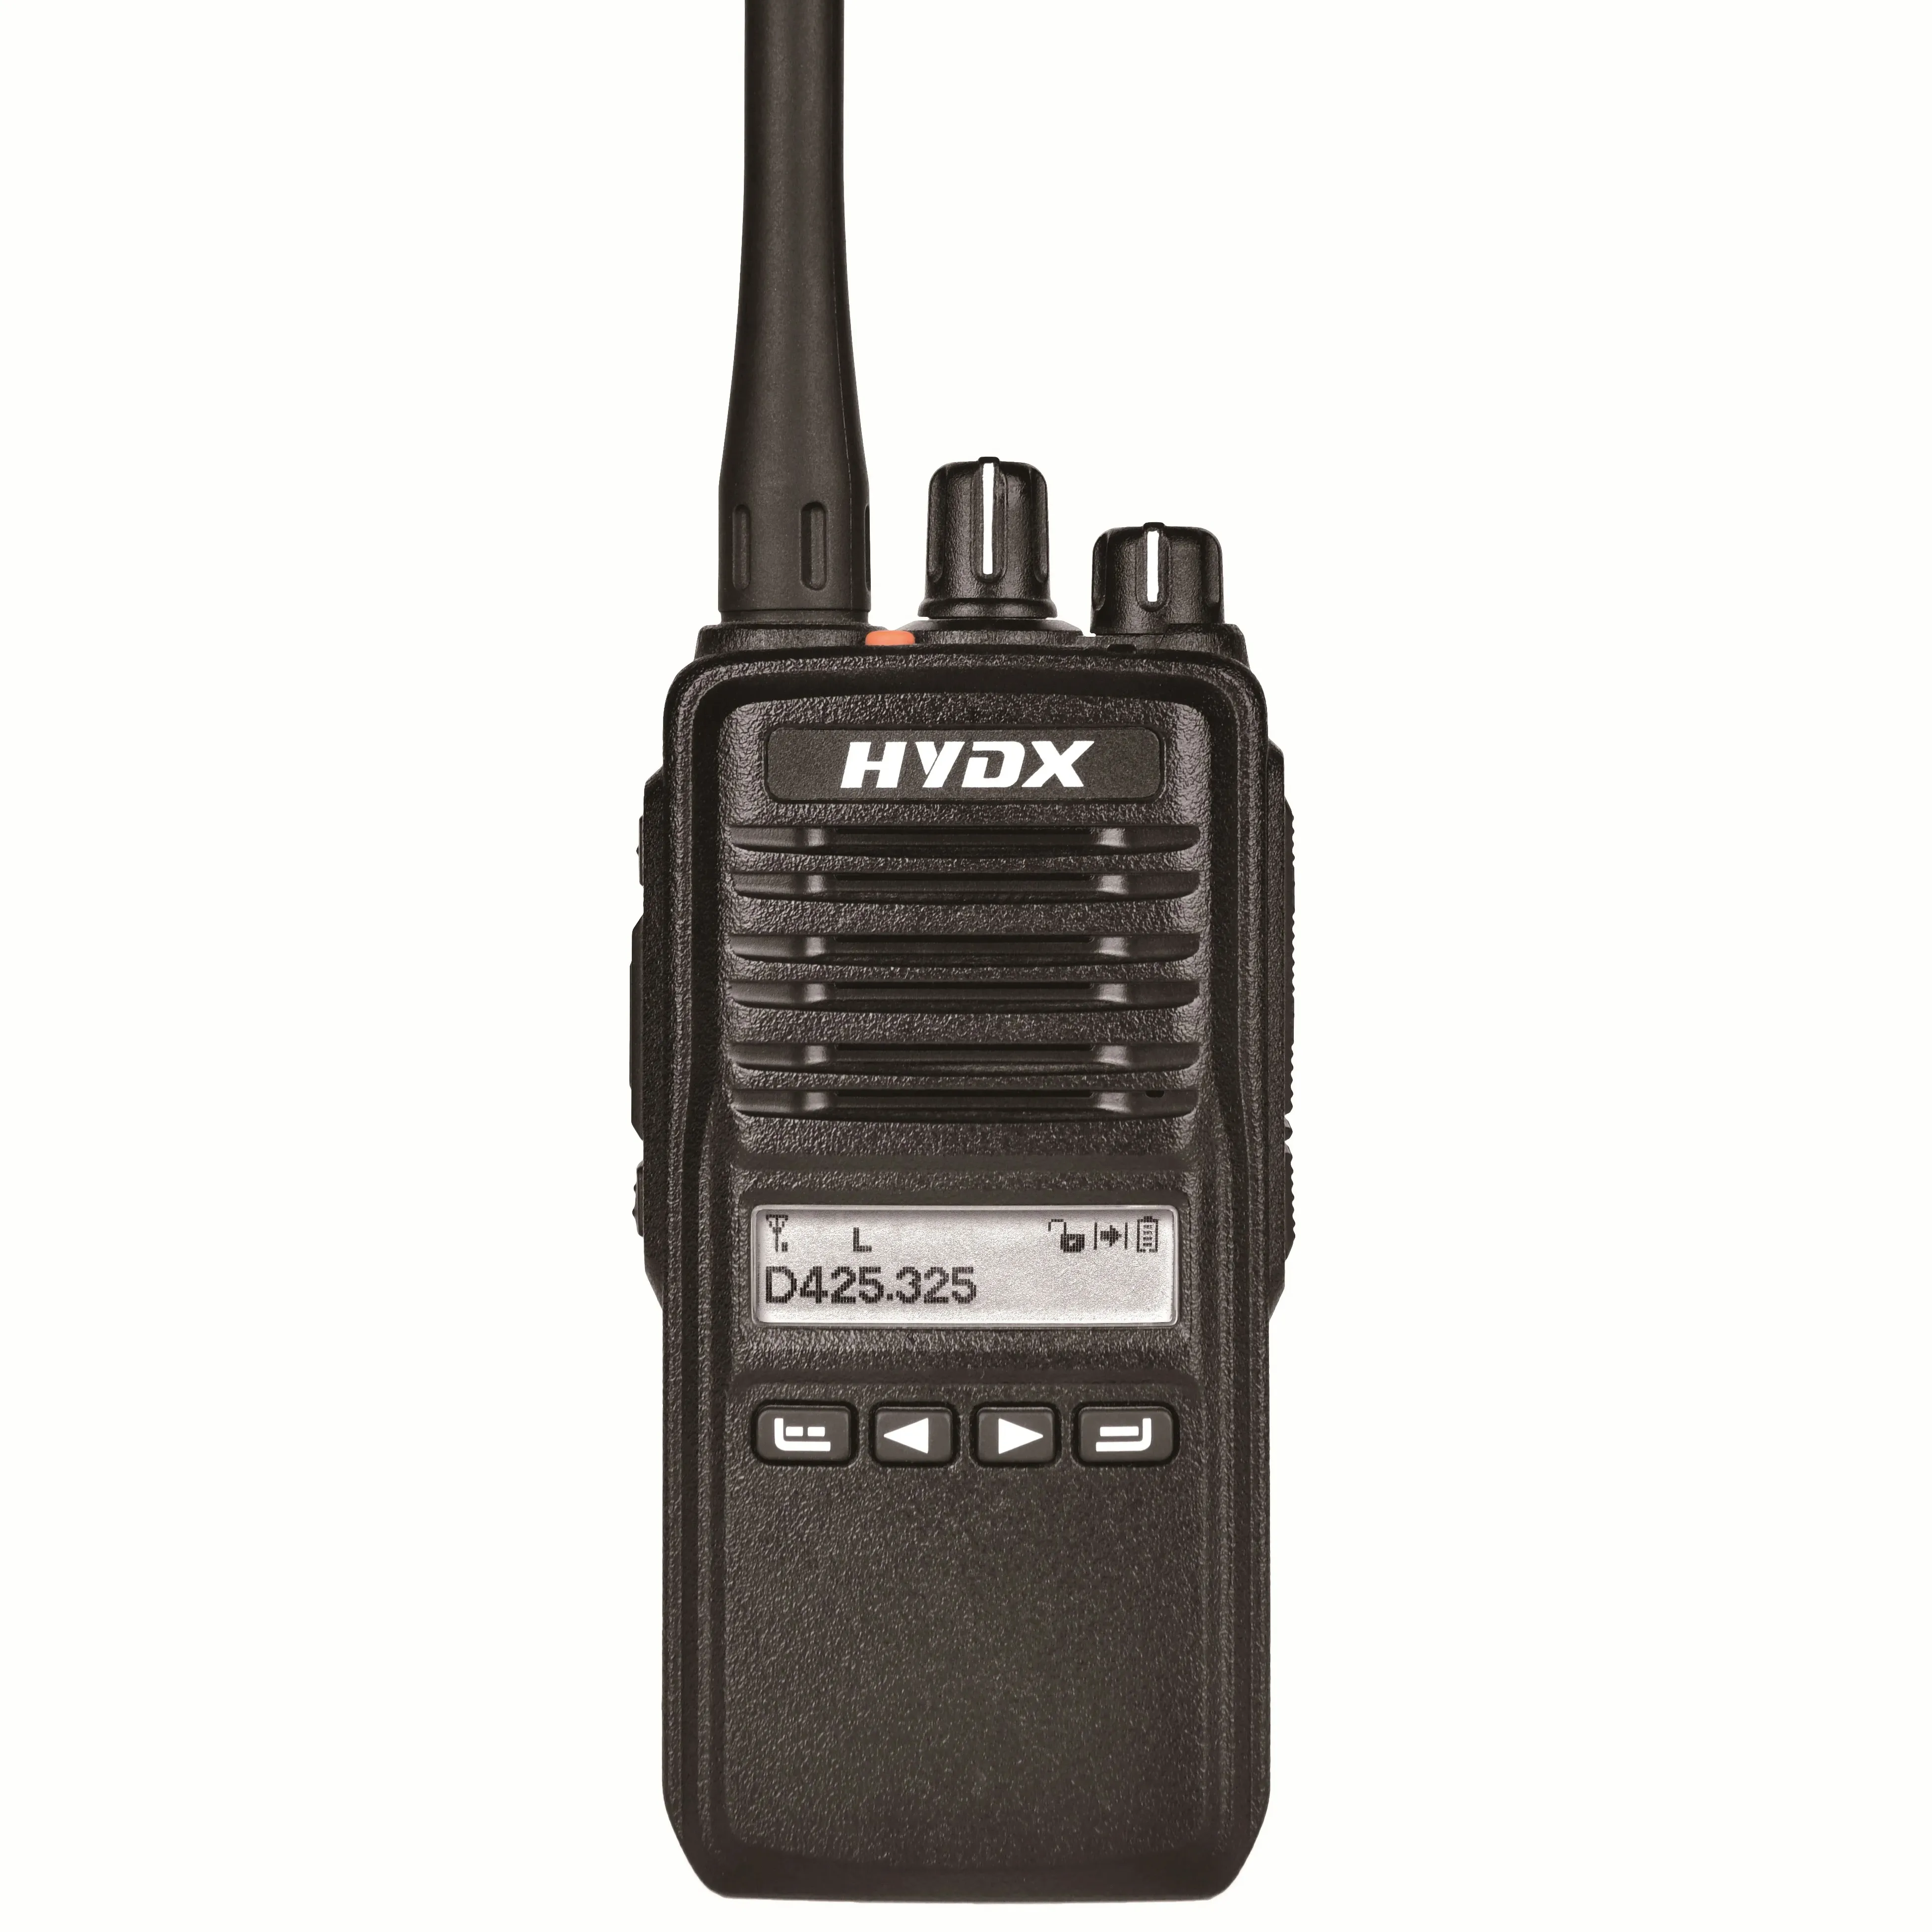 HYDX-D270PLUS 128 saluran Digital tahan air Radio dua arah Radio Ham ponsel Dual Band dengan Bluetooth